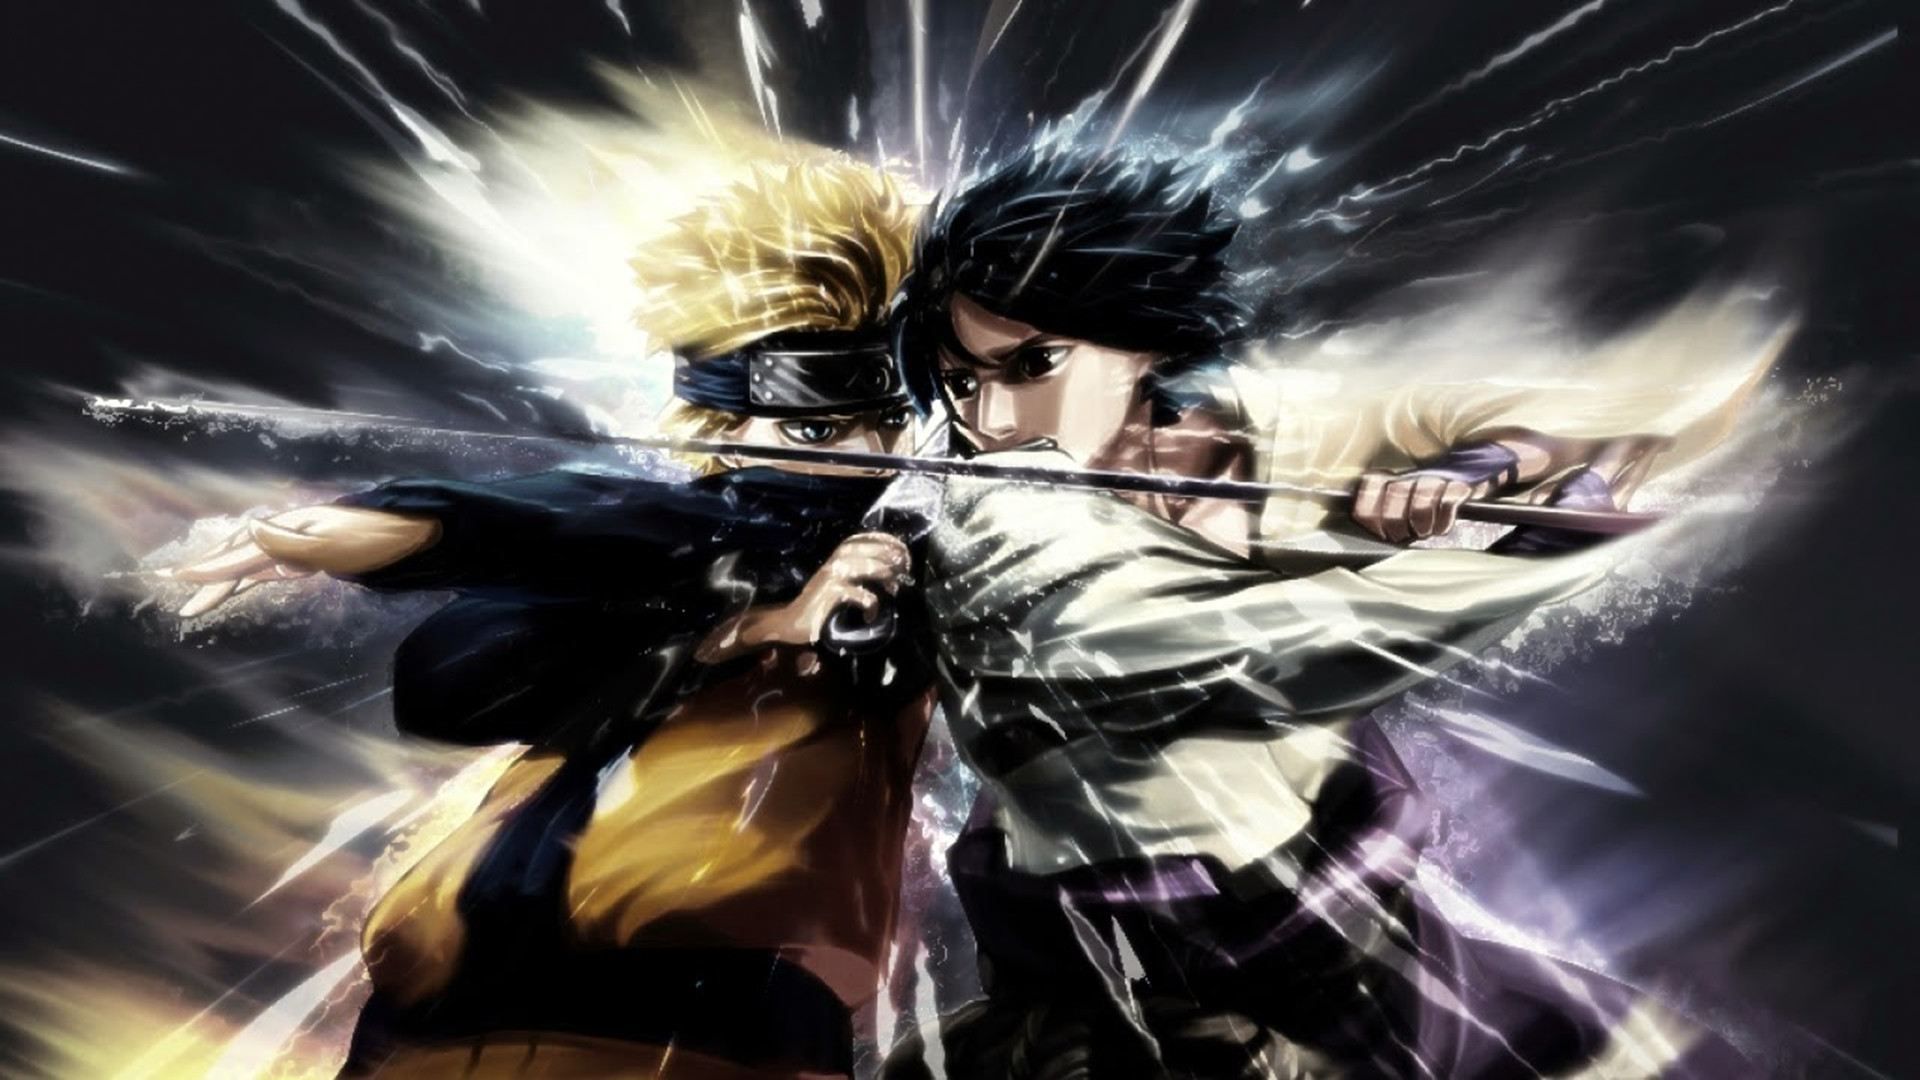 Naruto Vs Sasuke HD Wallpaper Image